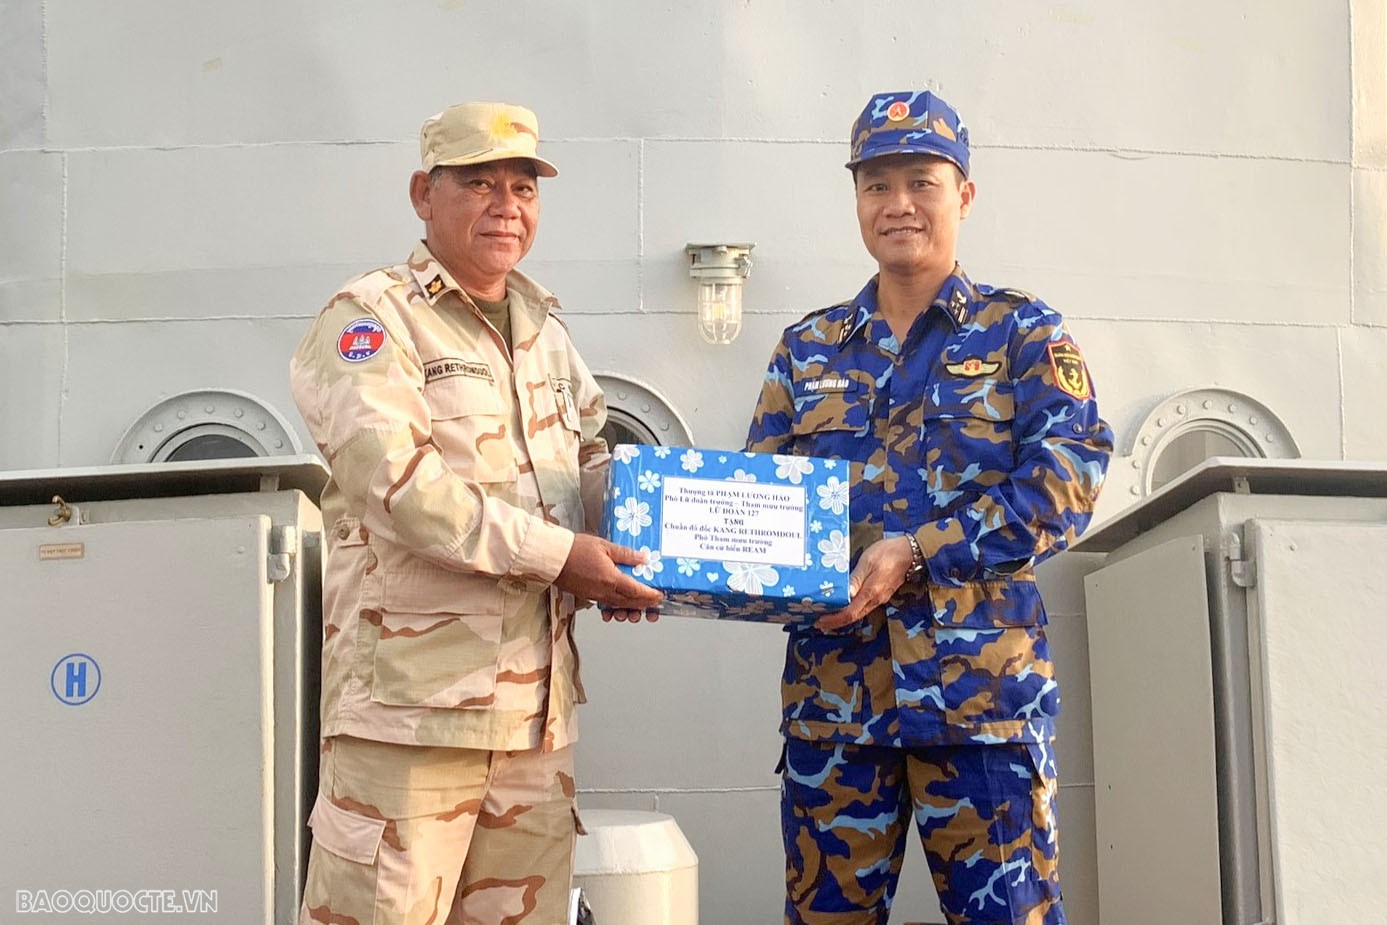 Chỉ huy tàu Hải quân Việt Nam tặng quà chỉ huy tàu Hải quân Hoàng gia Campuchia.